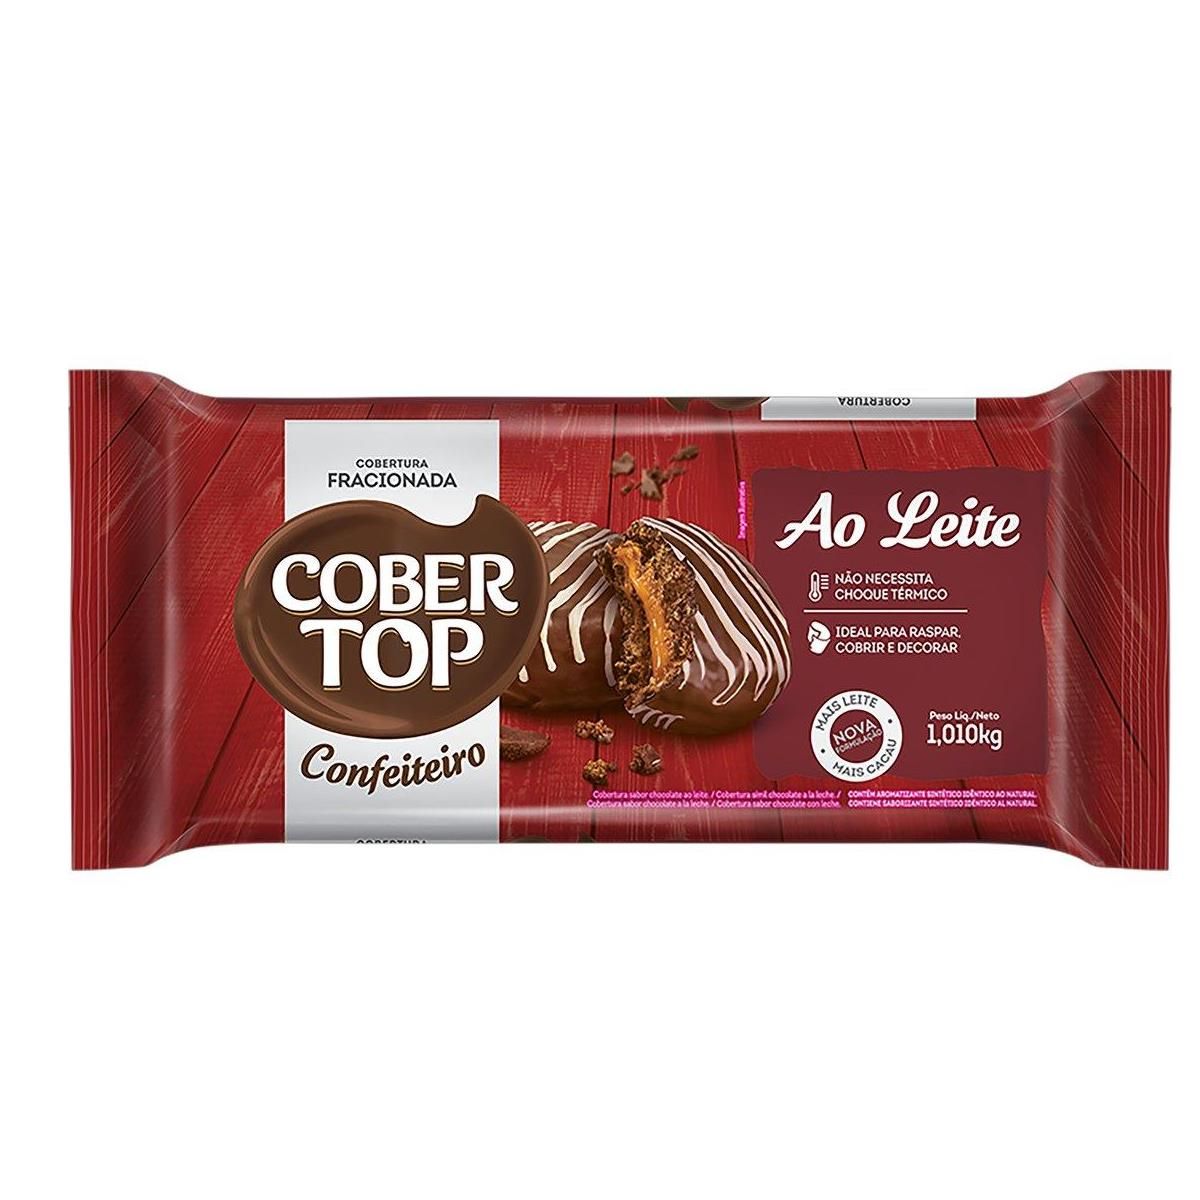 Barra para Cobertura Cober Top Chocolate ao Leite 1,010kg